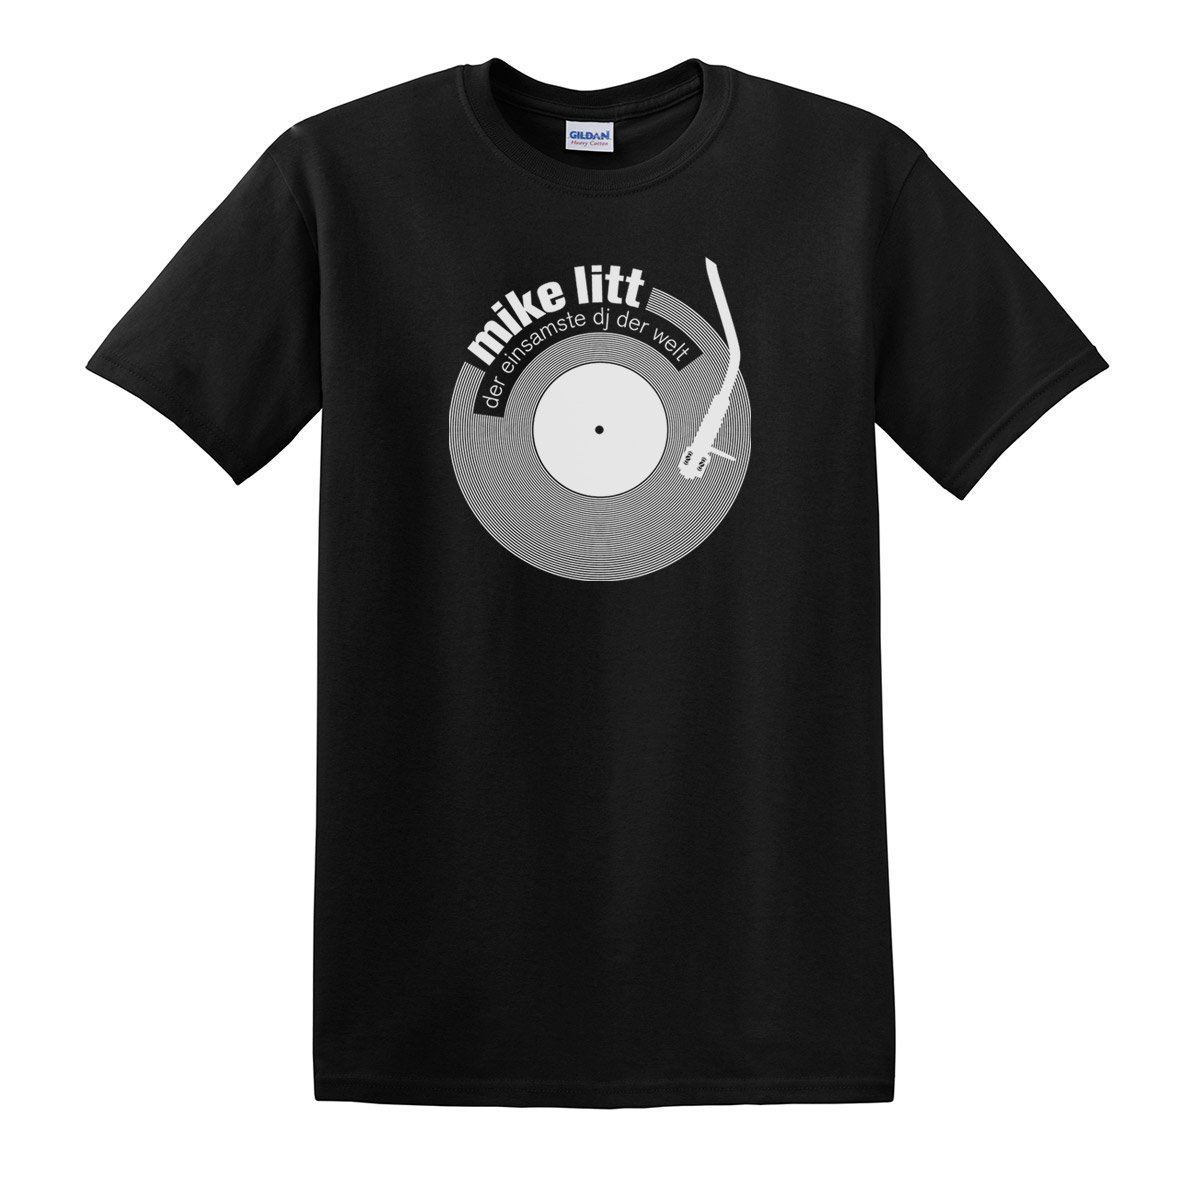 Image of T- Shirt "Mike Litt - Der einsamste DJ der Welt"